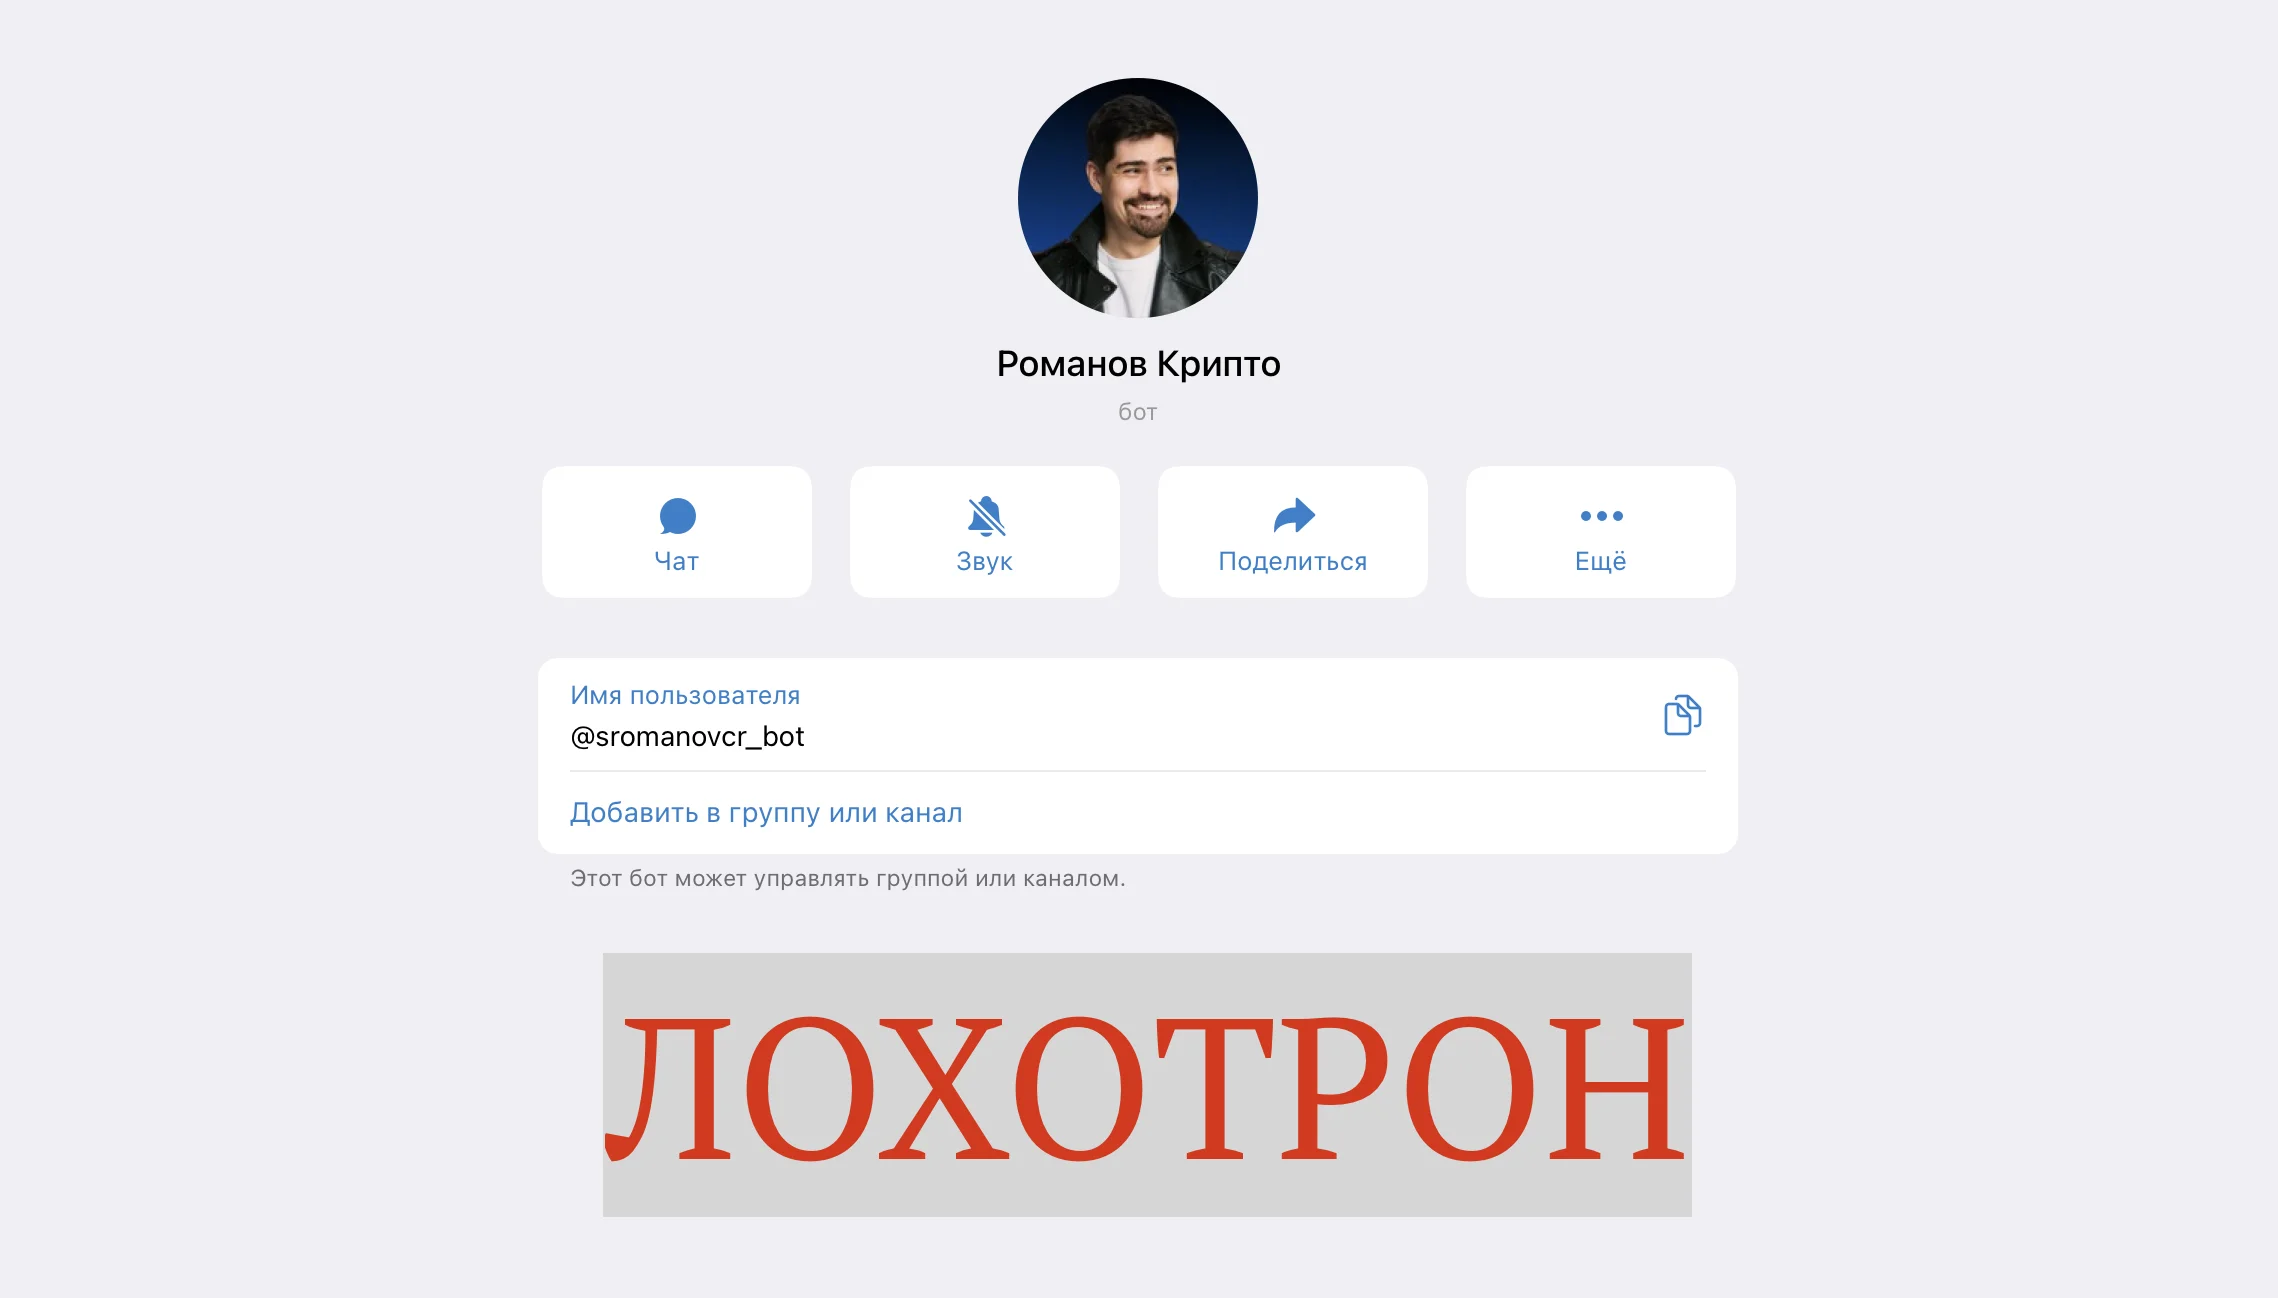 Сергей Романов Инвестирует – отзывы о телеграмм проекте. Как разводит?